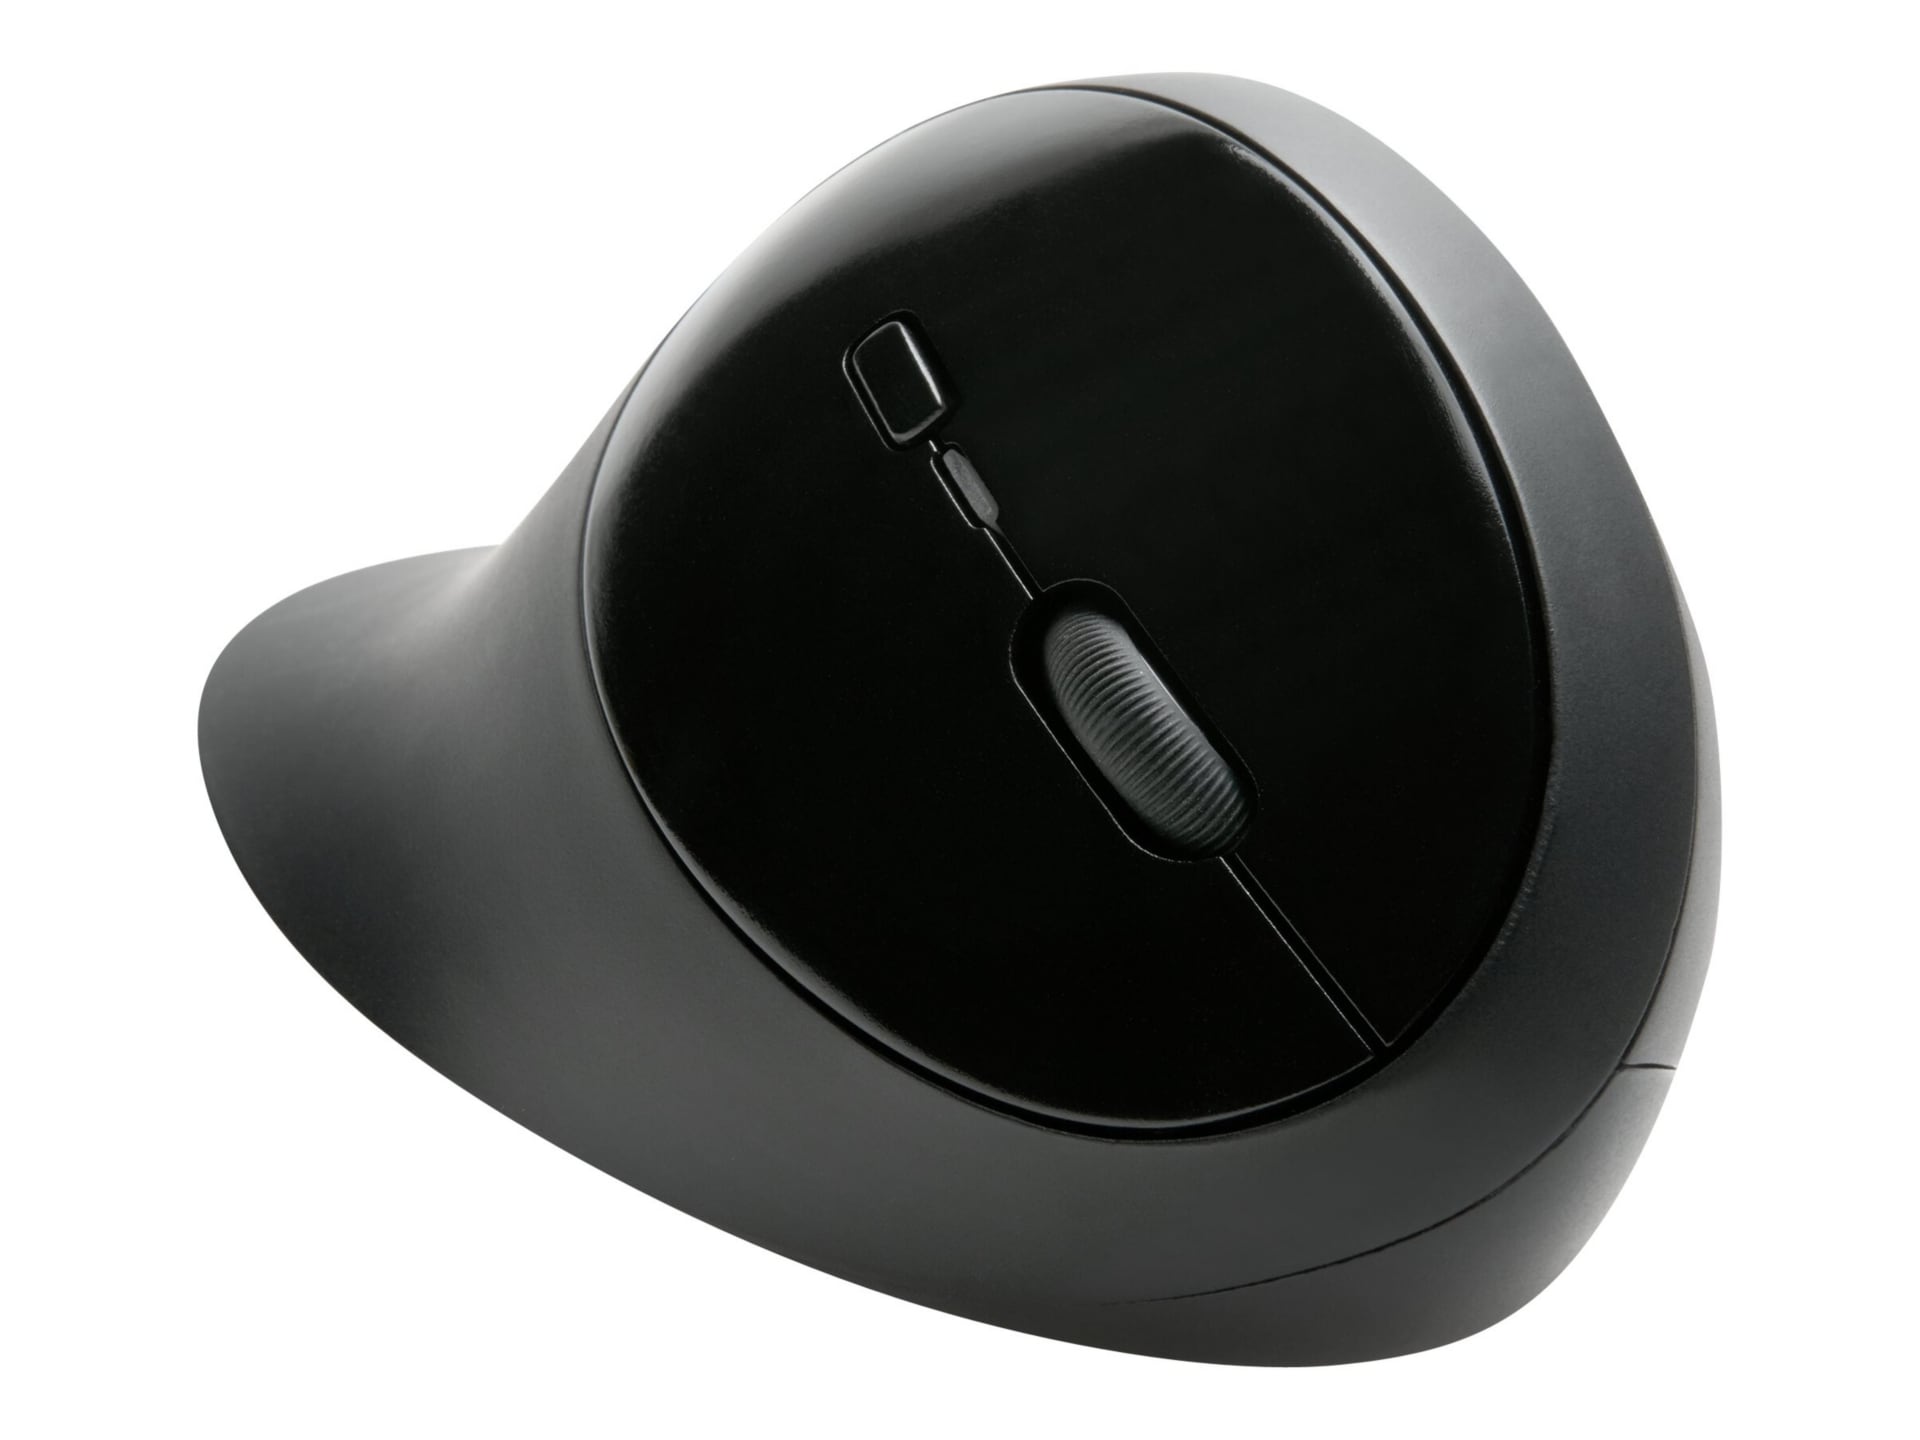 Kensington Pro Fit Ergo Wireless Mouse - mouse - 2,4 GHz, Bluetooth 4,0 LE